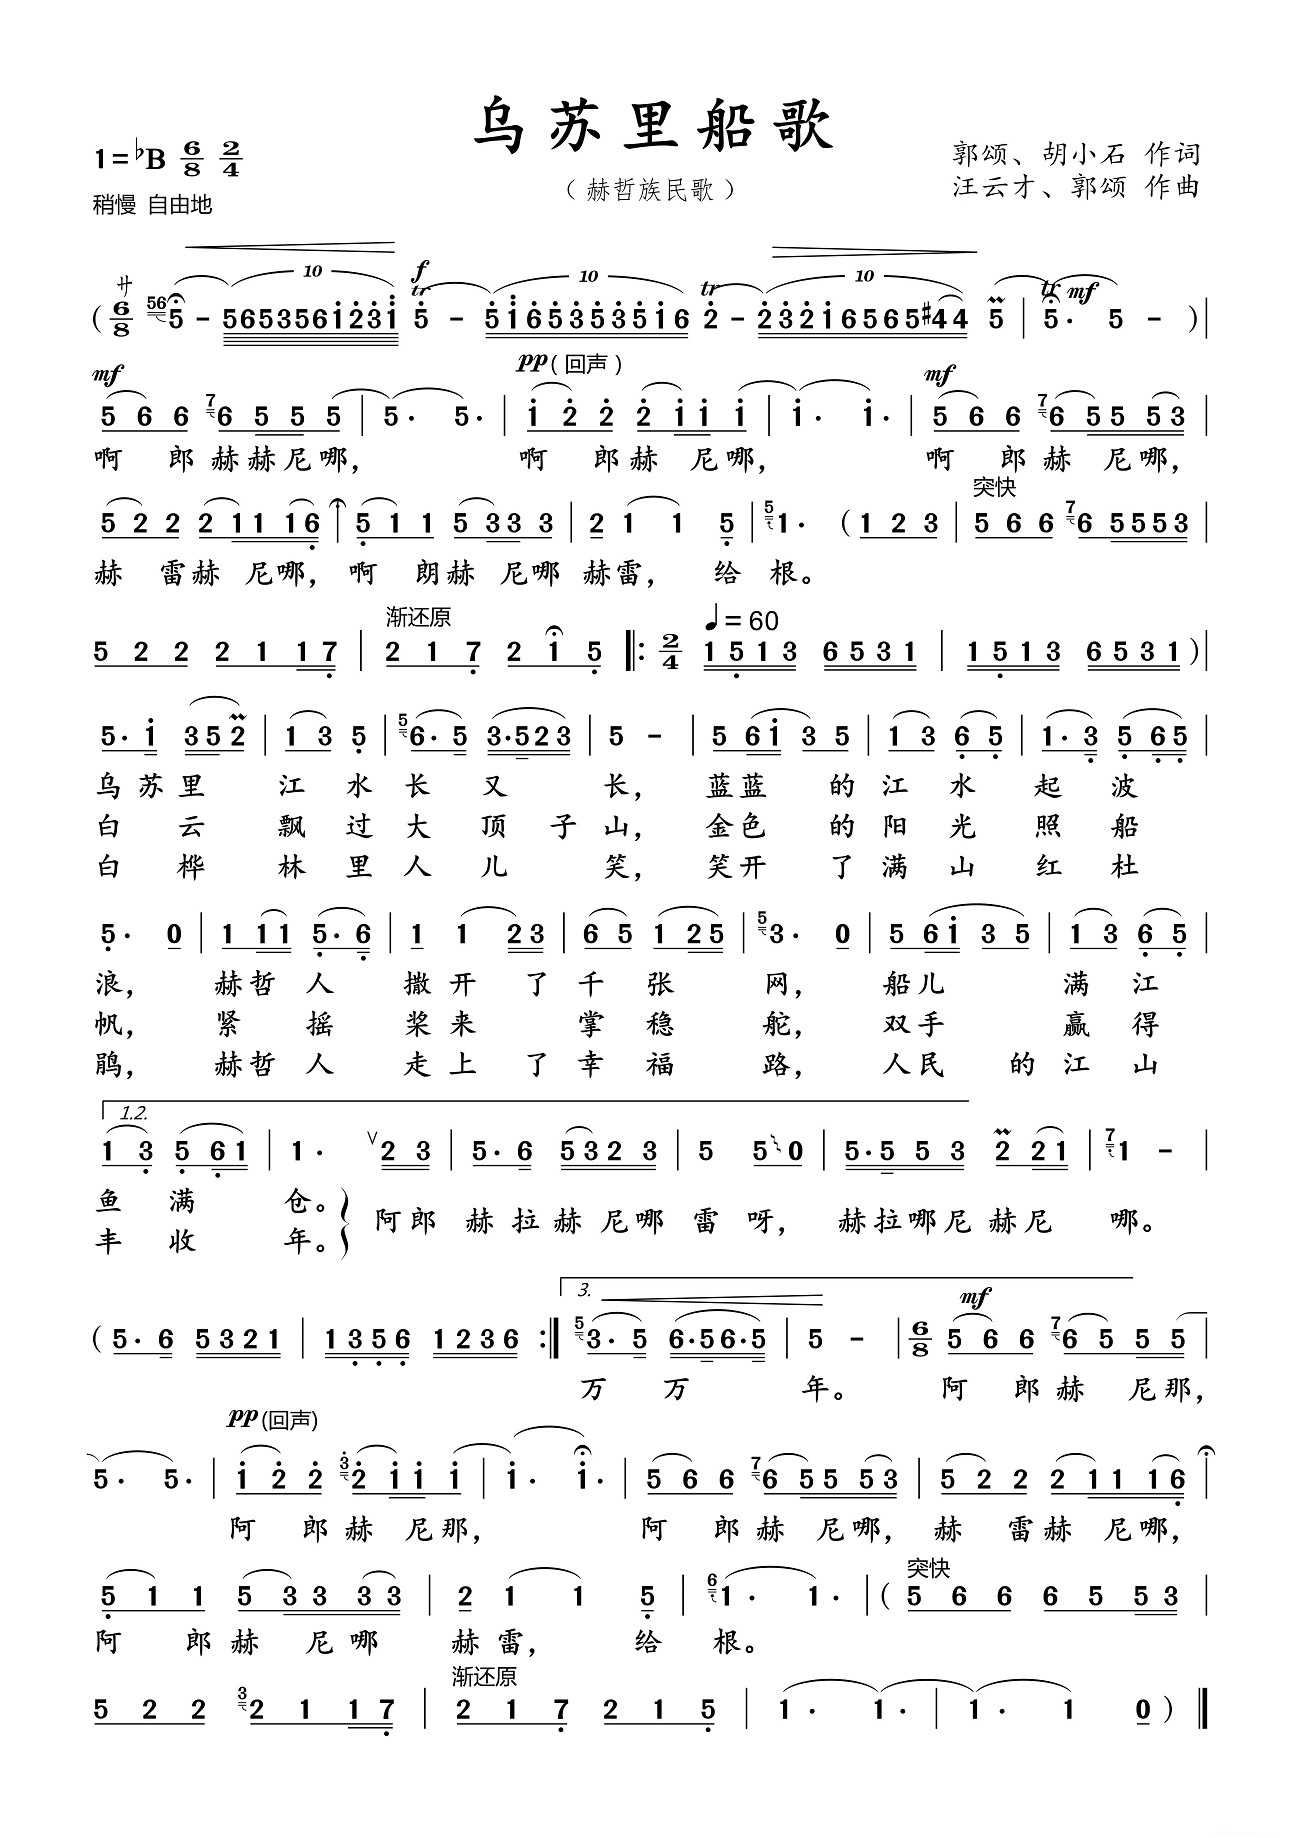 【乌苏里船歌】的简谱乐谱及歌词 – 降央卓玛